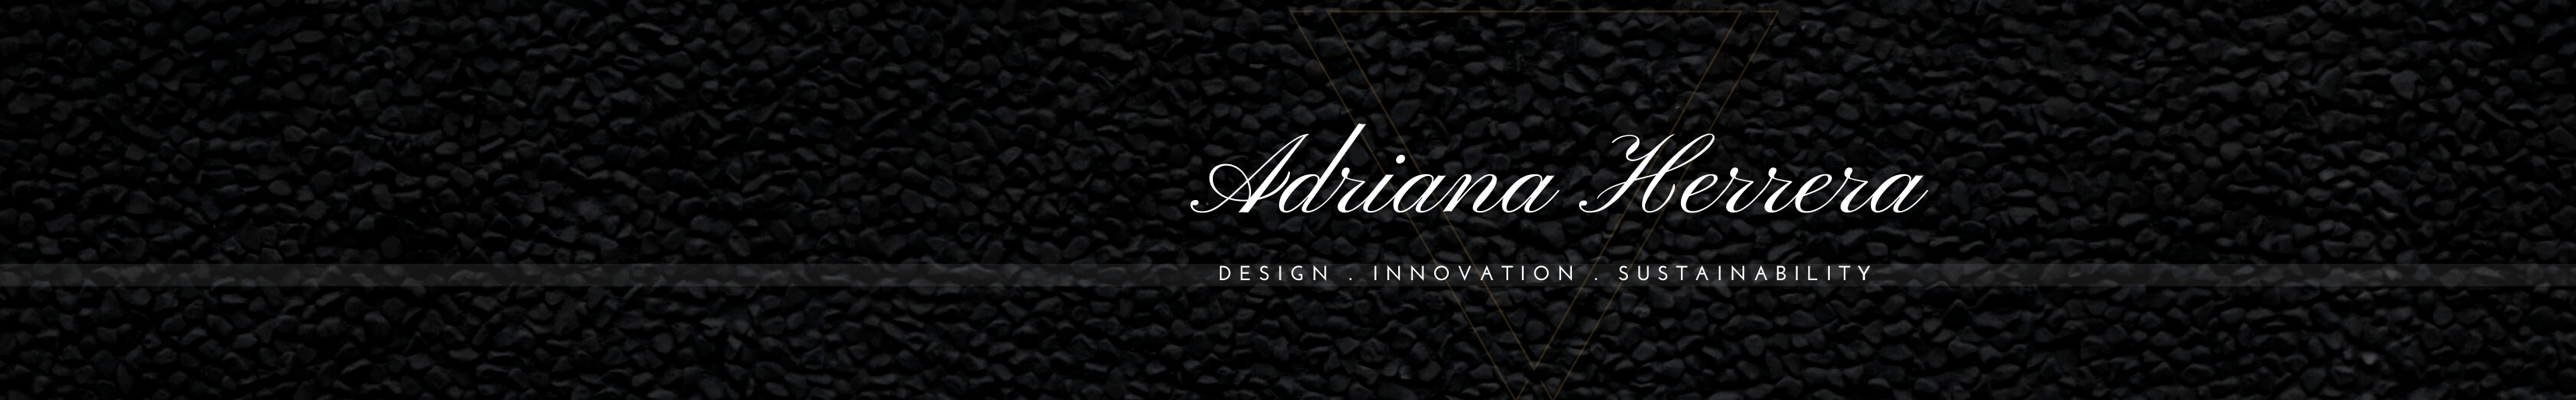 Banner de perfil de Adriana Herrera